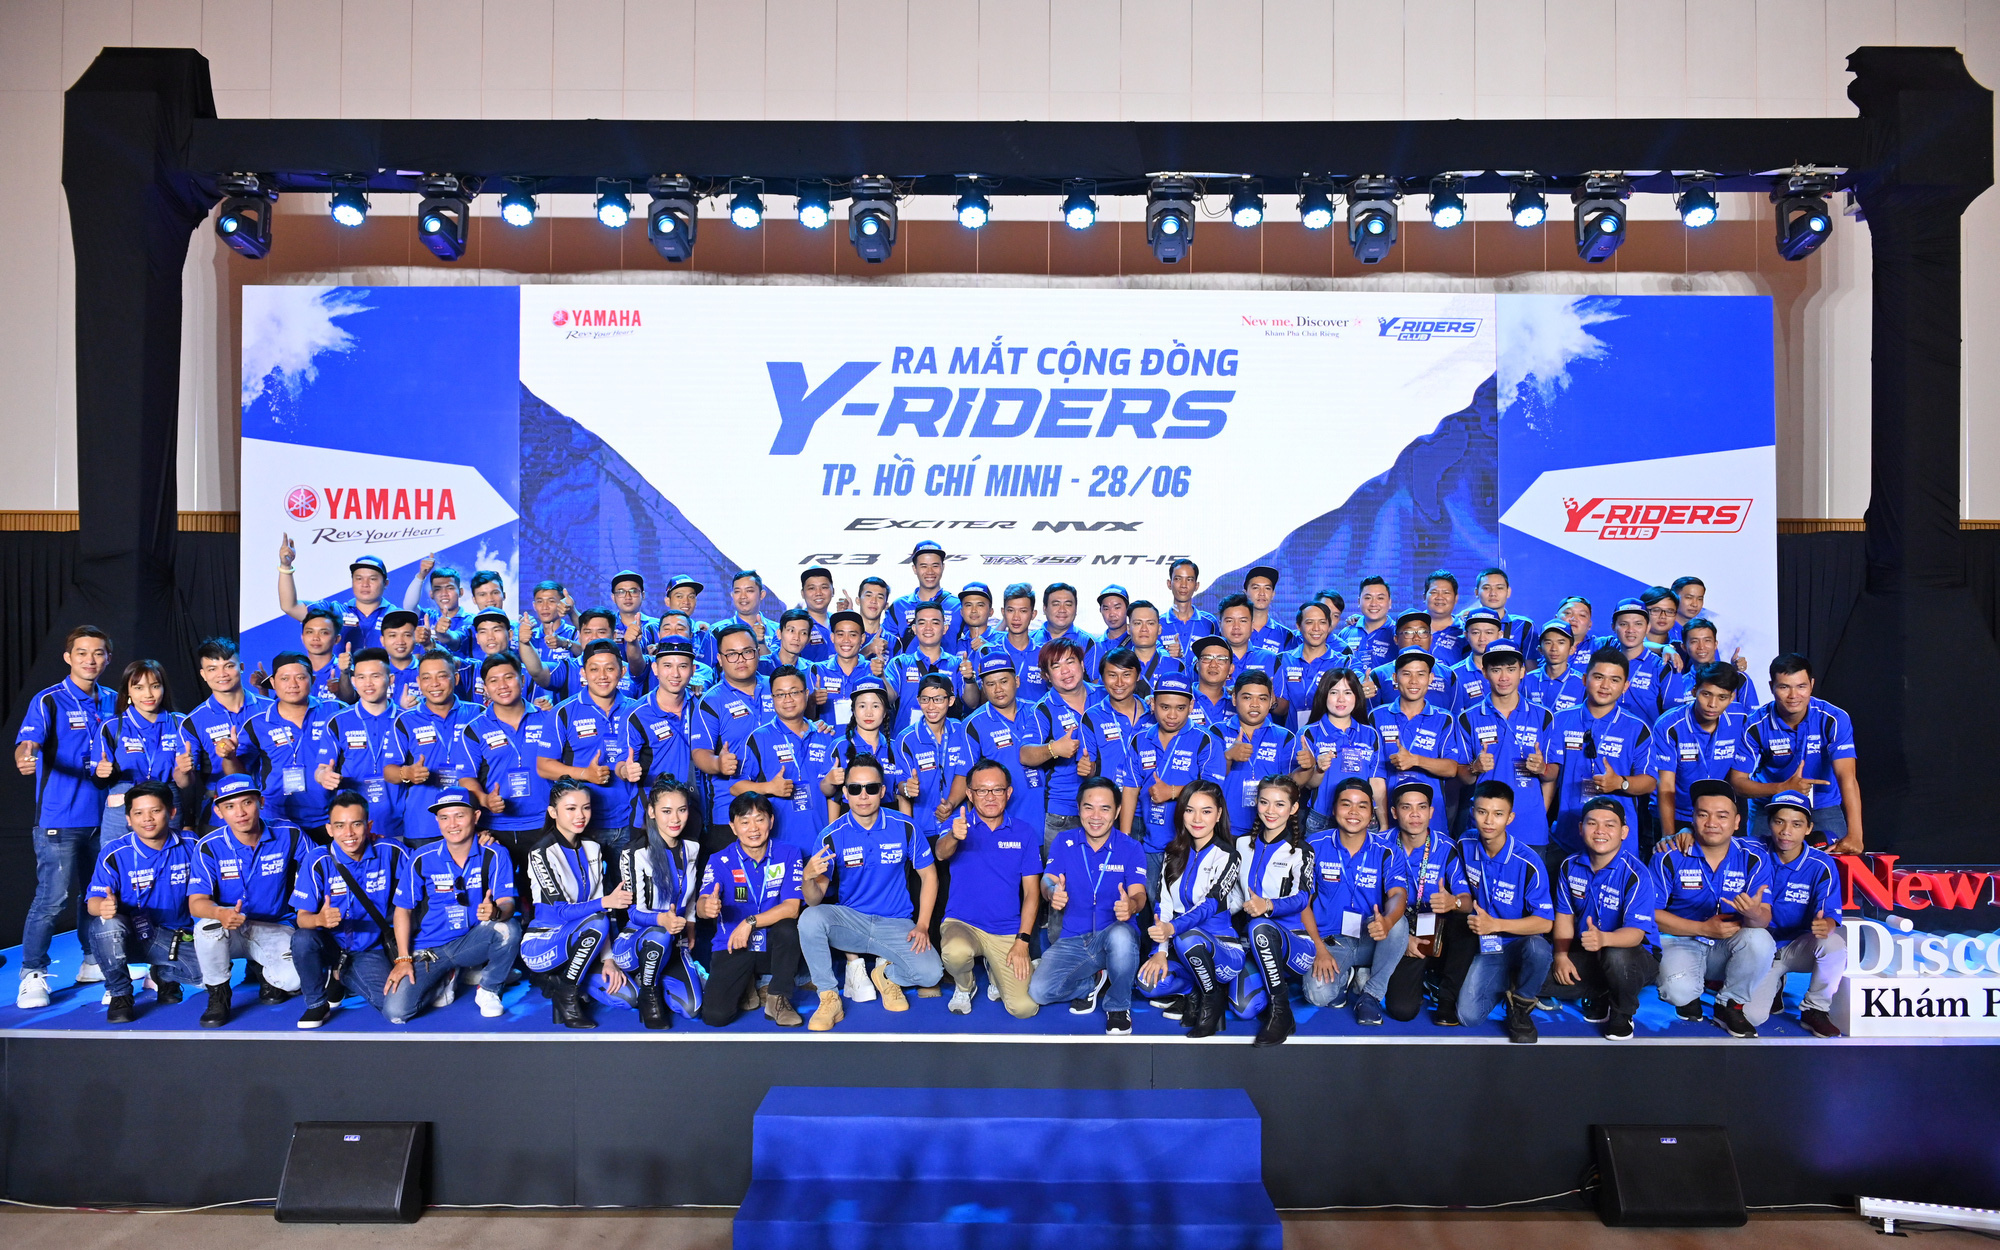 Yamaha vừa ra mắt Y-Riders Club đã có hơn 5.000 thành viên và 300 câu lạc bộ chính thức